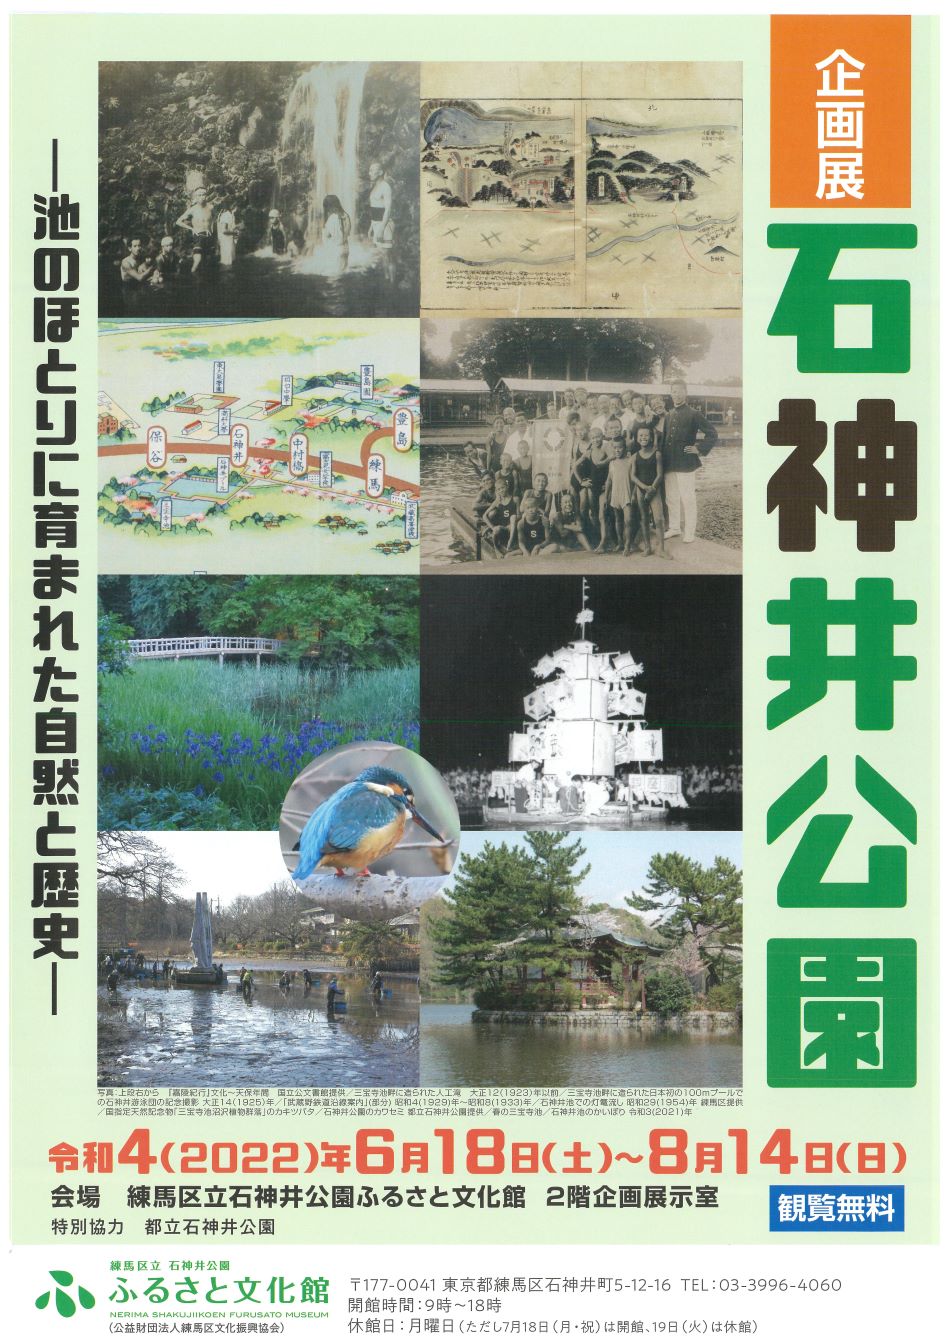 企画展「石神井公園－池のほとりに育まれた自然と歴史－」【終了しました】